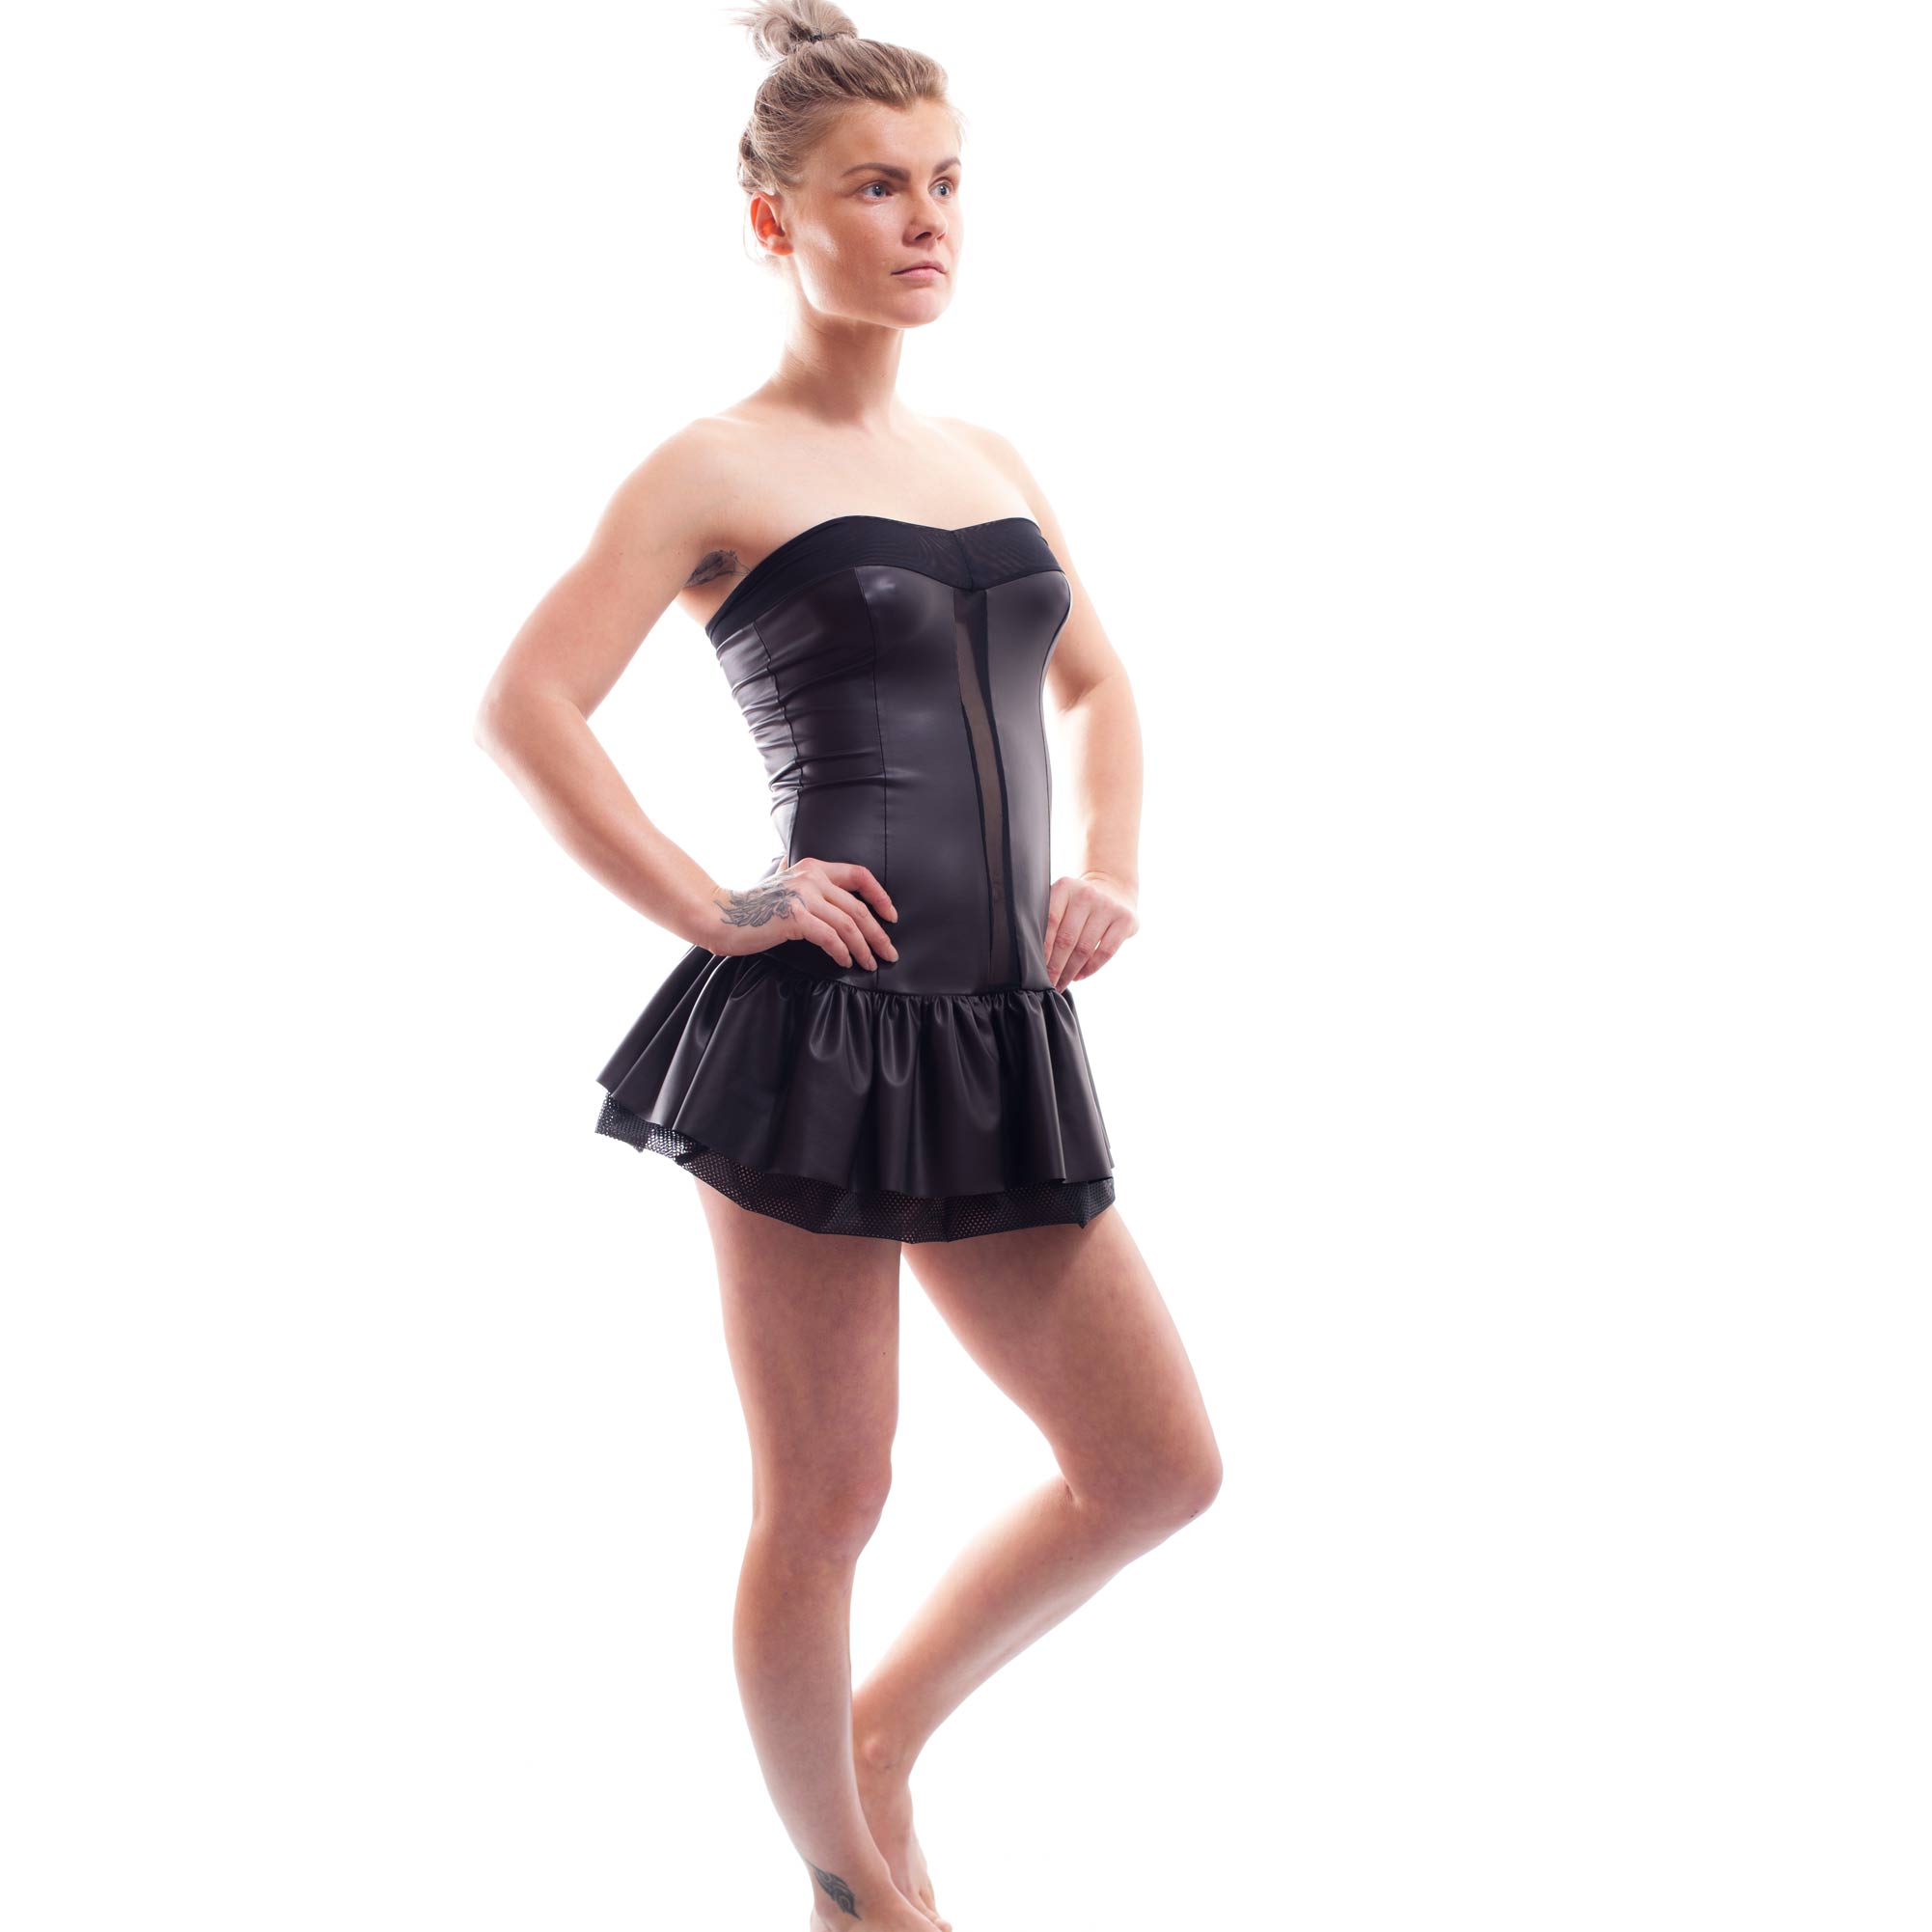 Dieser Black Joker Damen Kleid 391K1 gehört zu den Wojoer LIVE-Produkten. Sie werden ab Bestellung bei uns produziert. So können wir auf Kundenwünsche individuell eingehen.
Größen
Erhältlich in den Größen S, M, L, XL
Materialzusammensetzung
94% Polyester, 6 % Elasthan

100% Polyester
Besonderheiten
LIVE-Produkt  |  Ringe |…